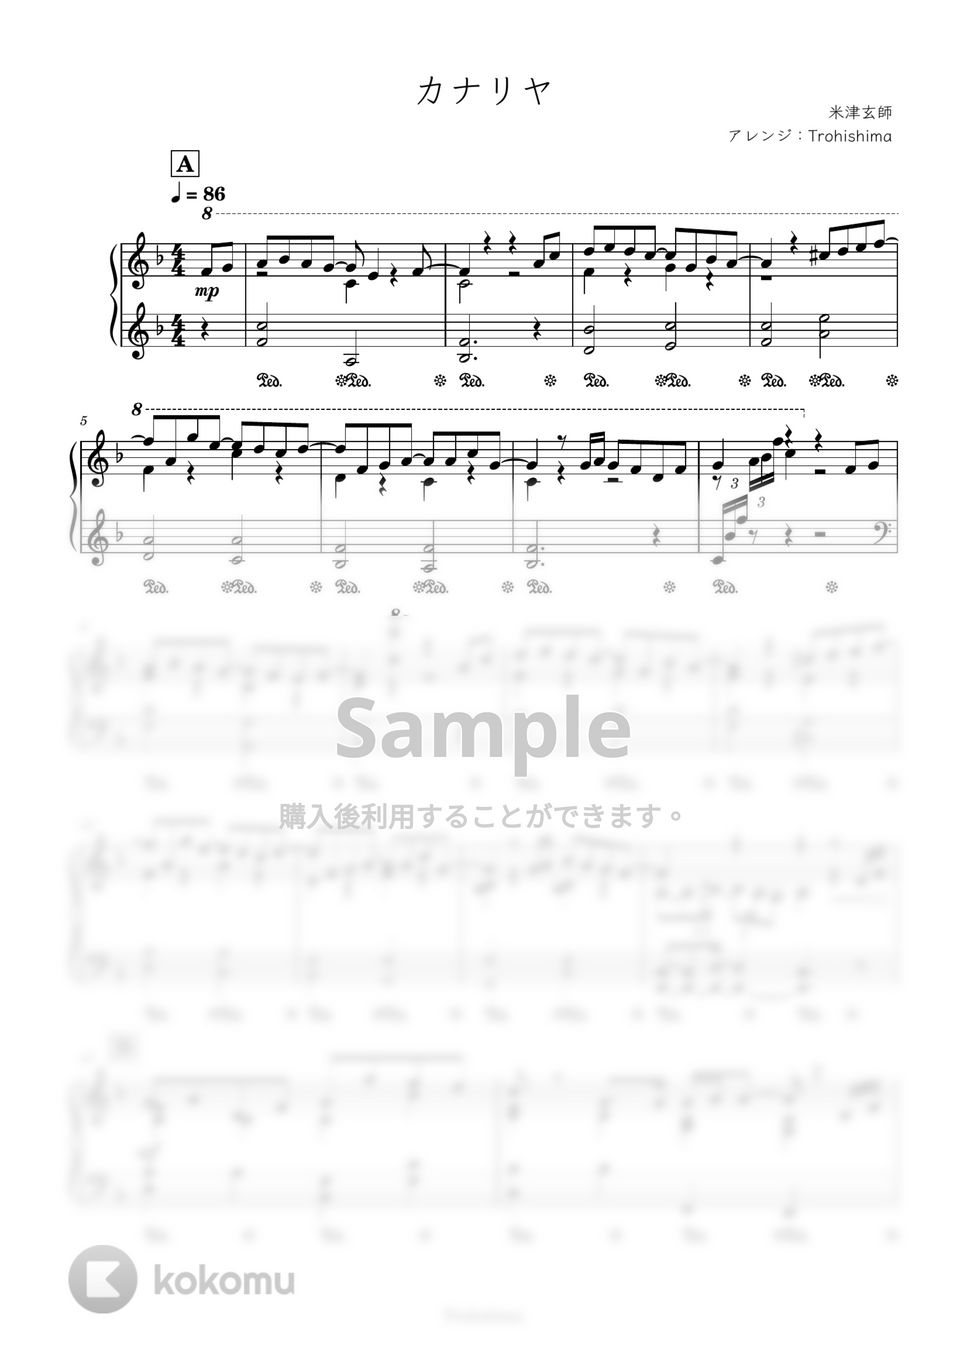 米津玄師 - カナリヤ (『ふたりのディスタンス』主題歌) by Trohishima